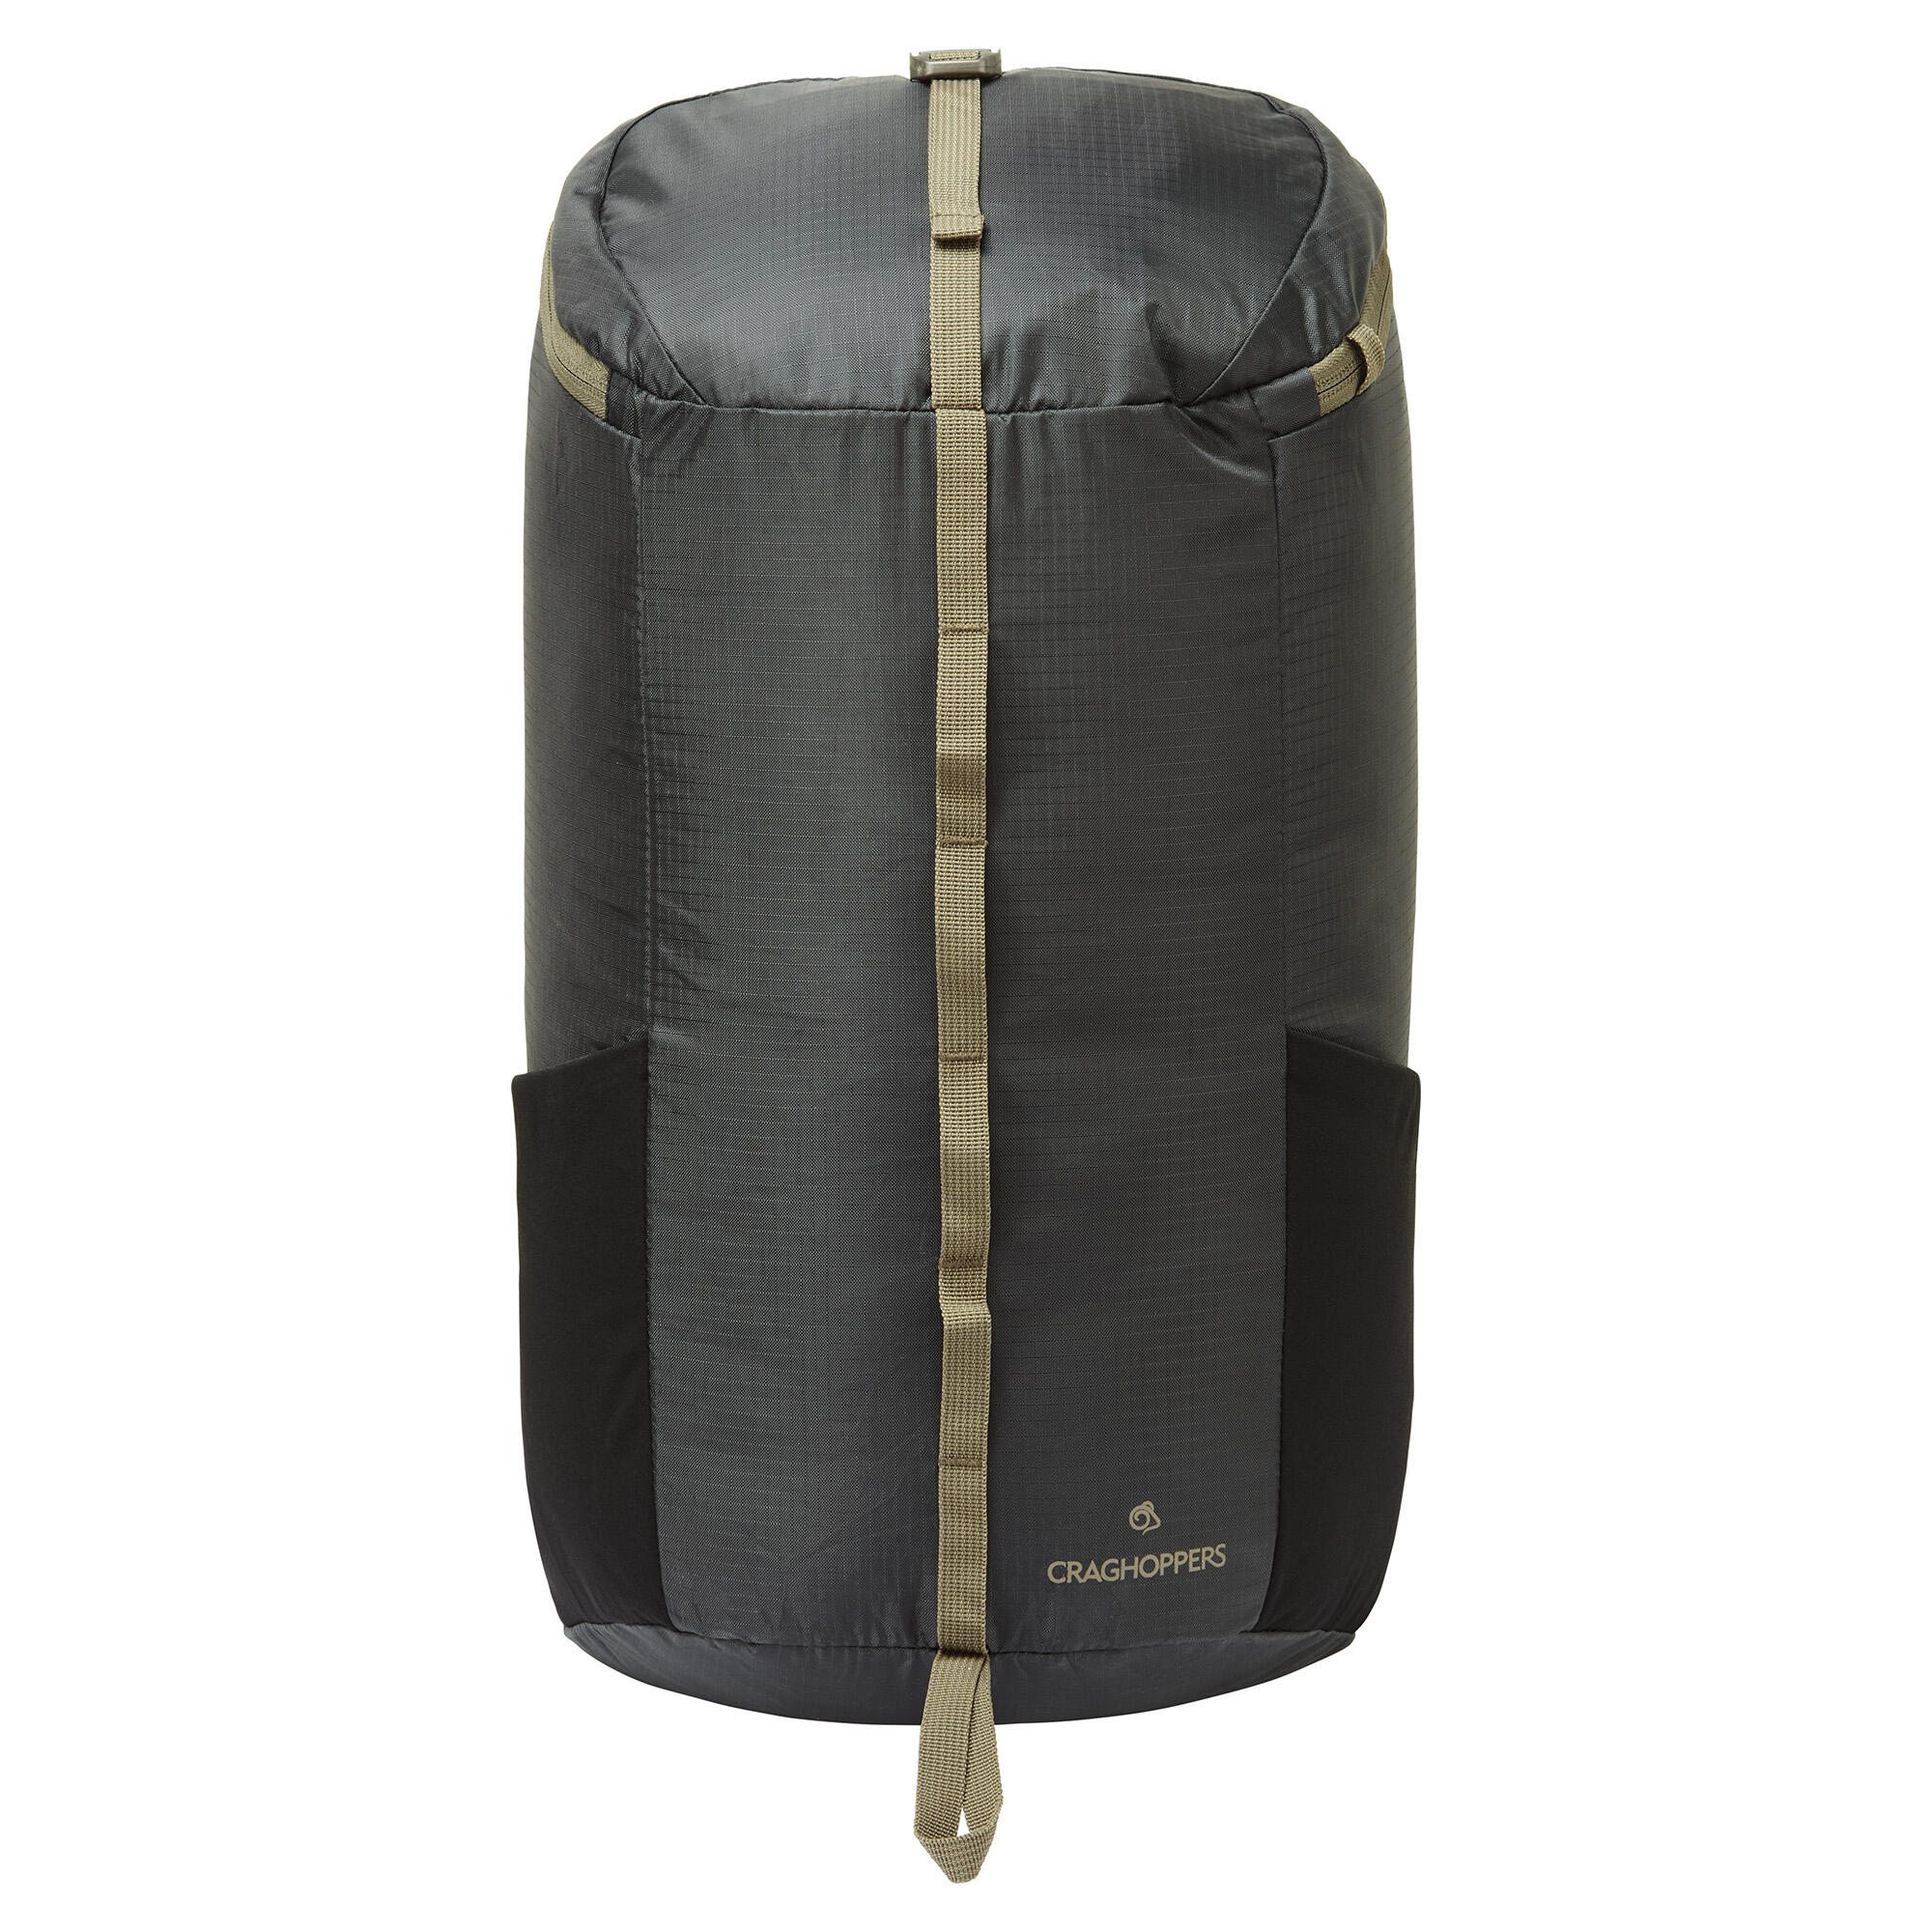 CRAGHOPPERS 20L Packaway Backpack